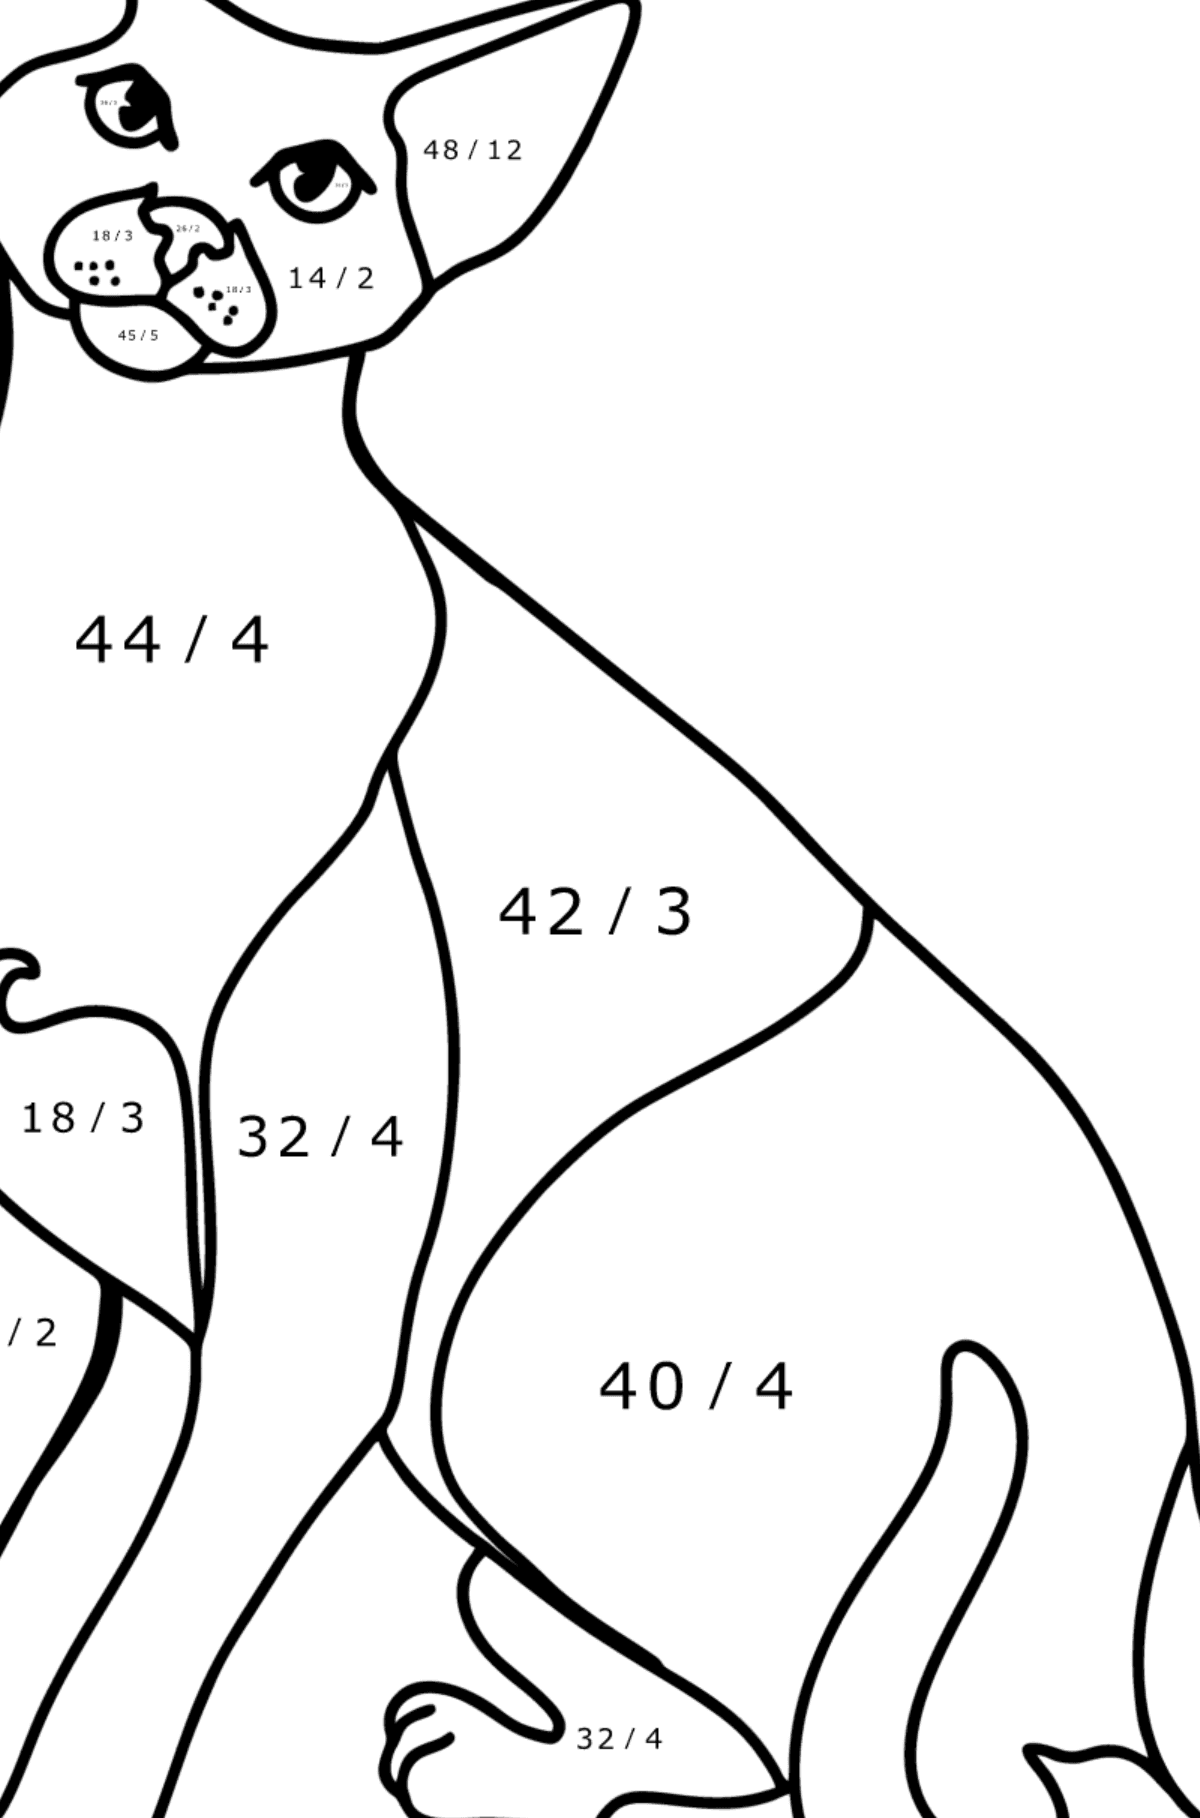 Disegno da colorare di Gatto orientale a pelo corto - Colorazione matematica - Divisione per bambini